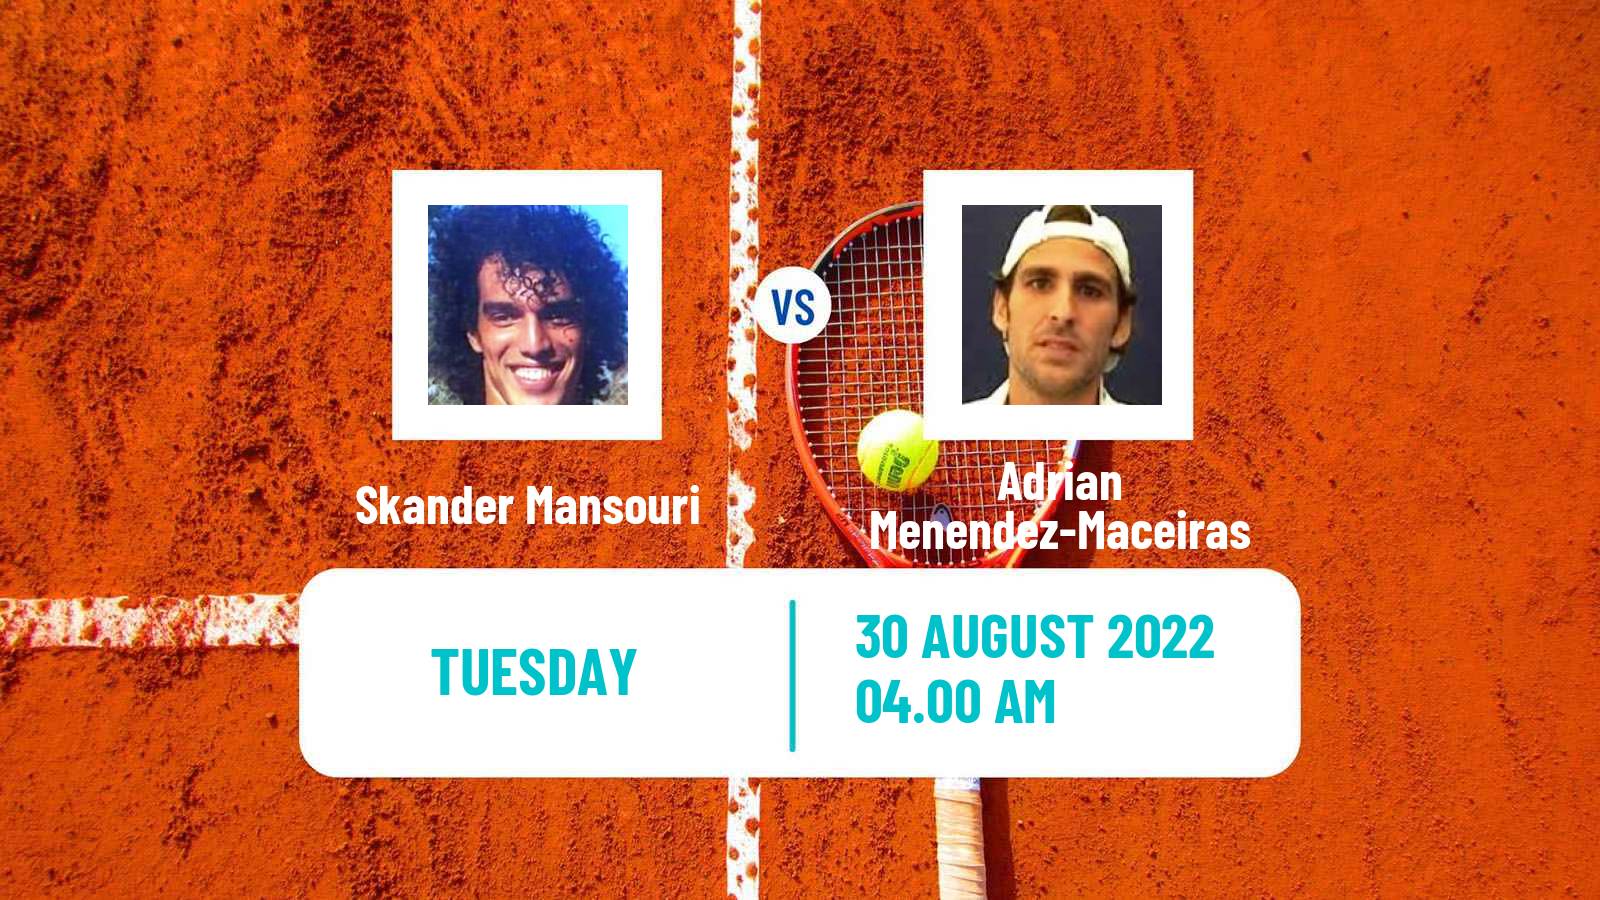 Tennis ATP Challenger Skander Mansouri - Adrian Menendez-Maceiras